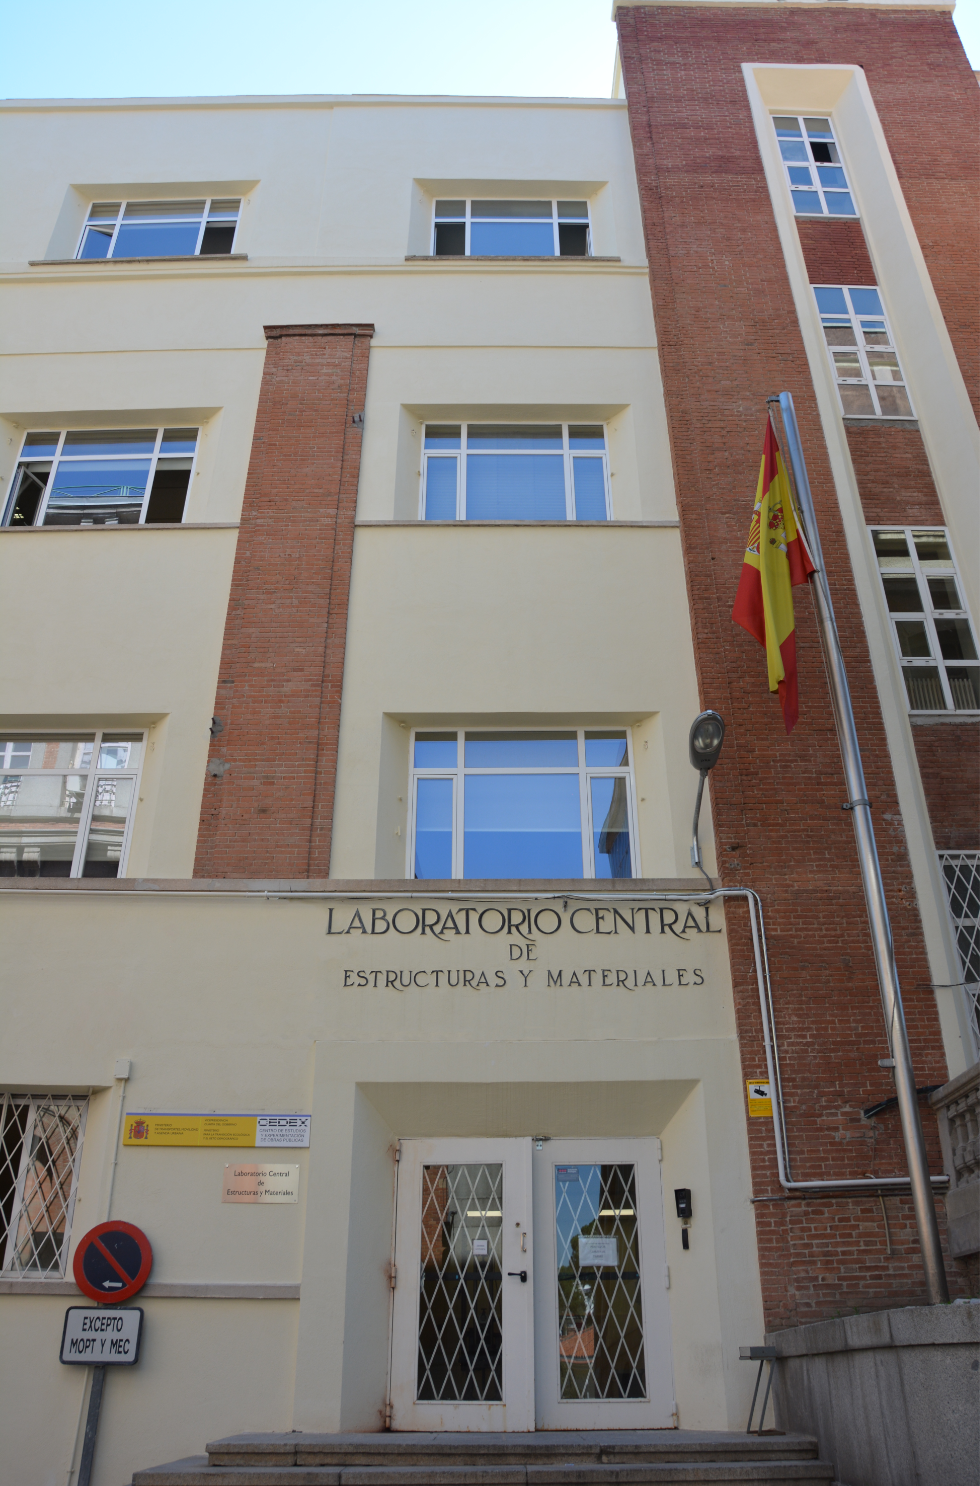 Foto de la fachada del Laboratorio Central de Estructuras y Materiales